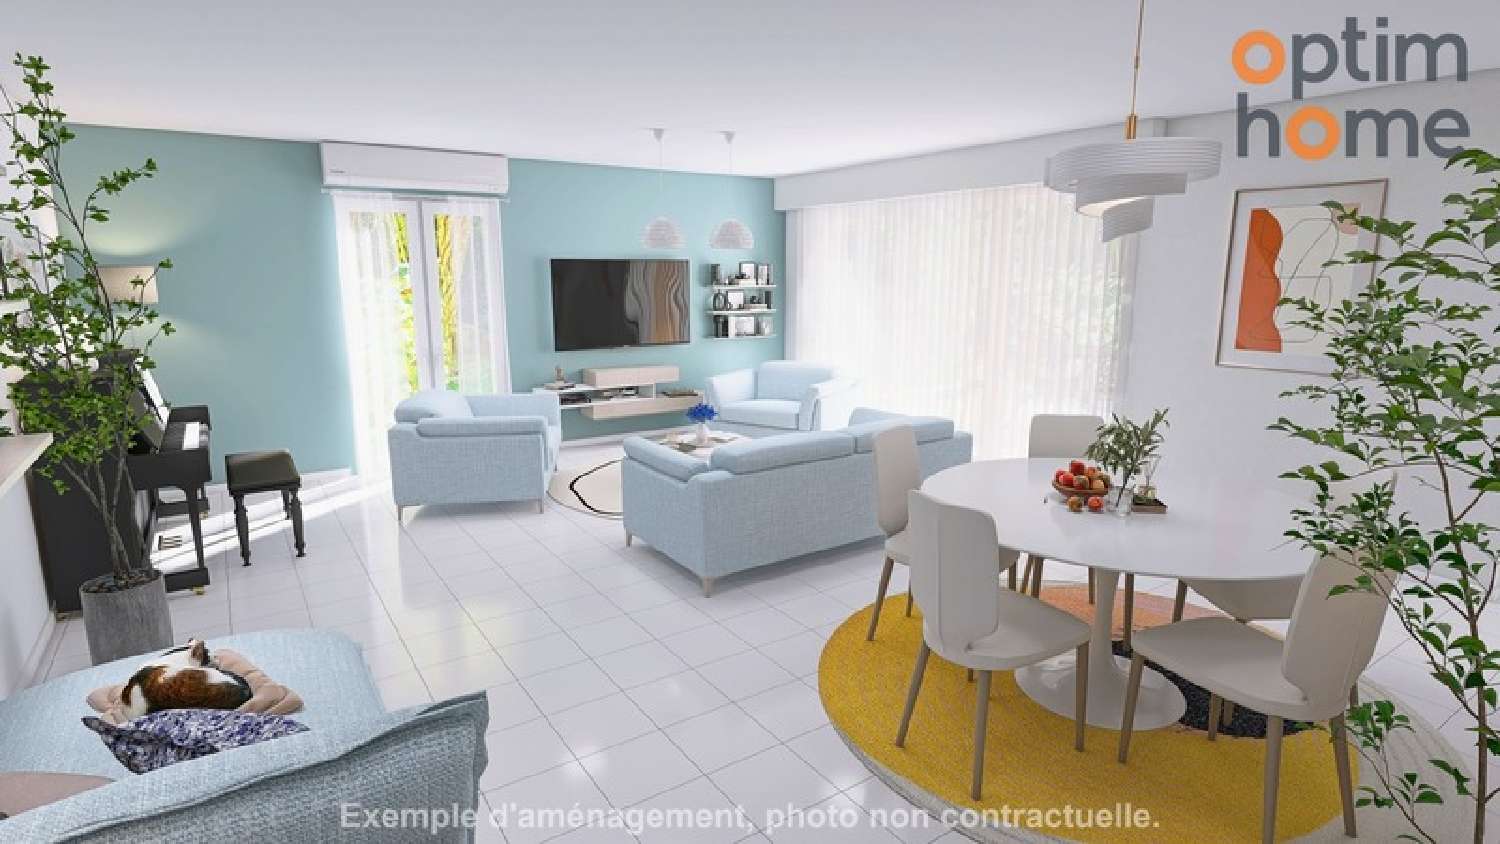  à vendre appartement Manosque Alpes-de-Haute-Provence 3